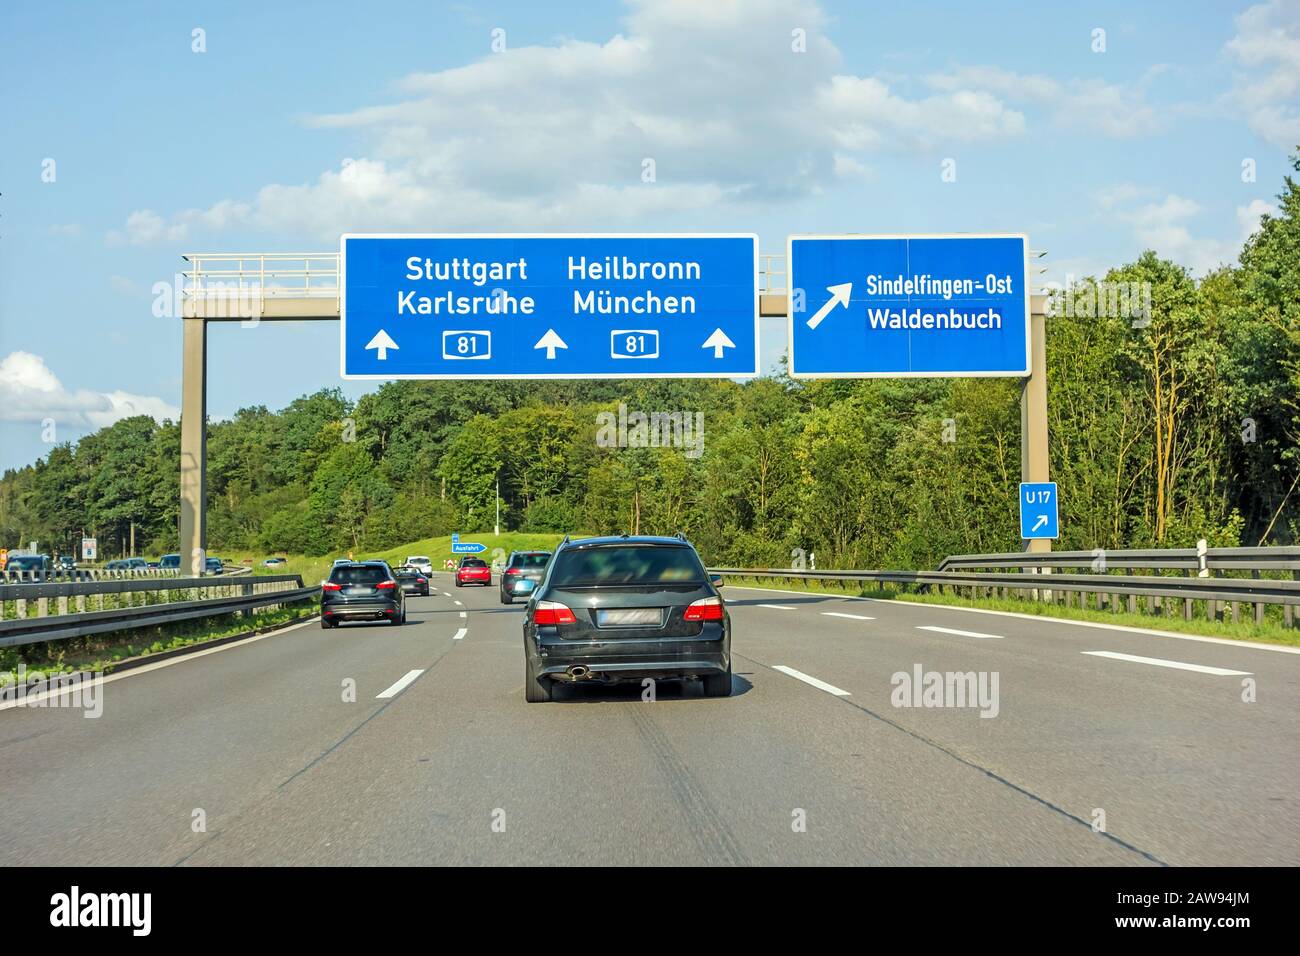 Autostrada segnaletica stradale (Autobahn 81 / A 81 / e 531) raccordo autostradale Stoccarda / Karlsruhe - Heilbronn / Monaco (Munchen) - uscita Sindelfingen / Wald Foto Stock